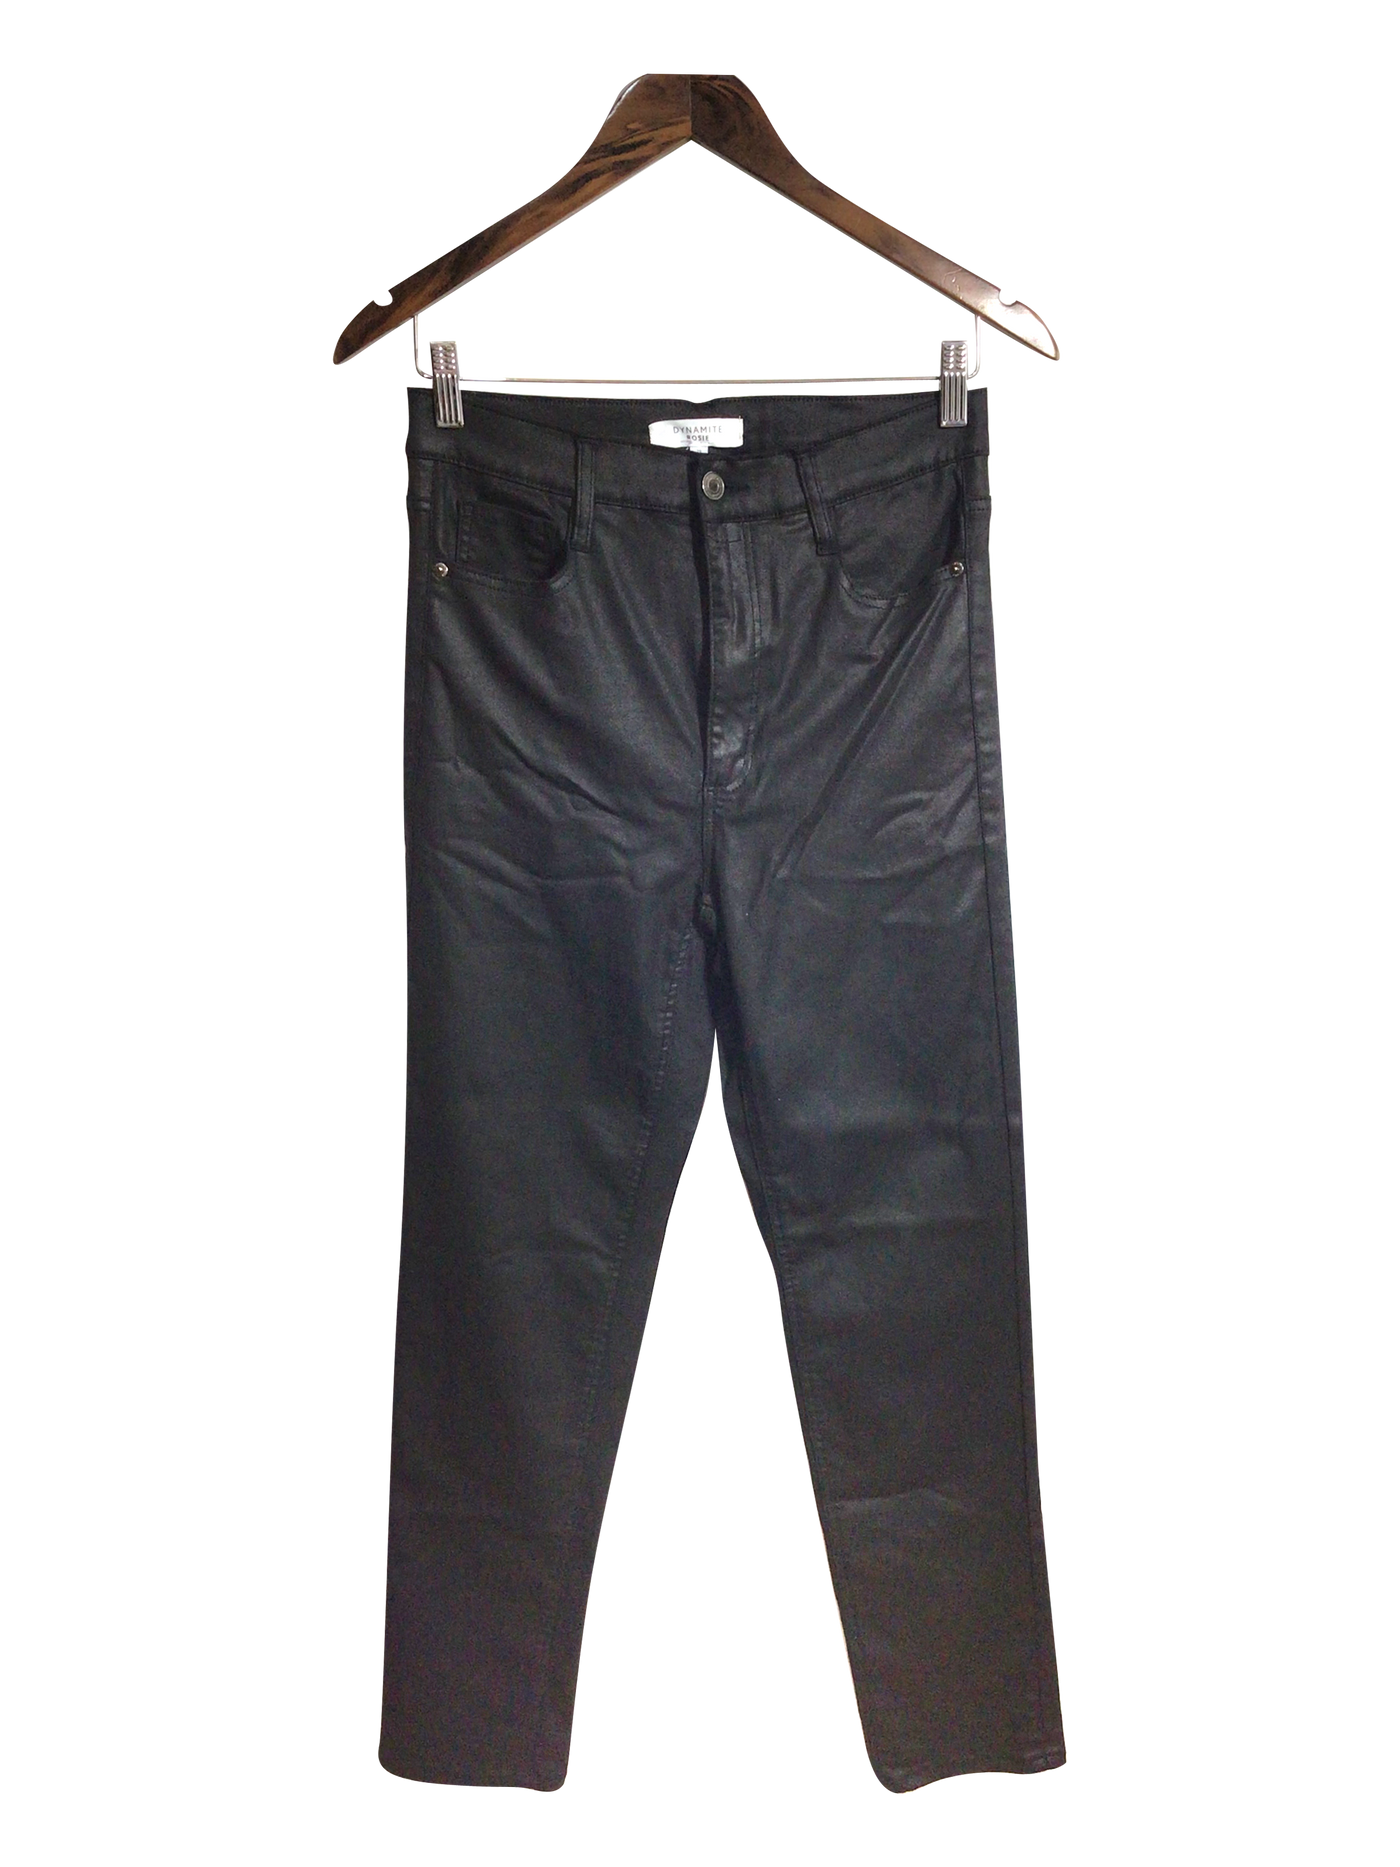 DYNAMITE Women Work Pants Regular fit in Black - Size 29 | 12.39 $ KOOP